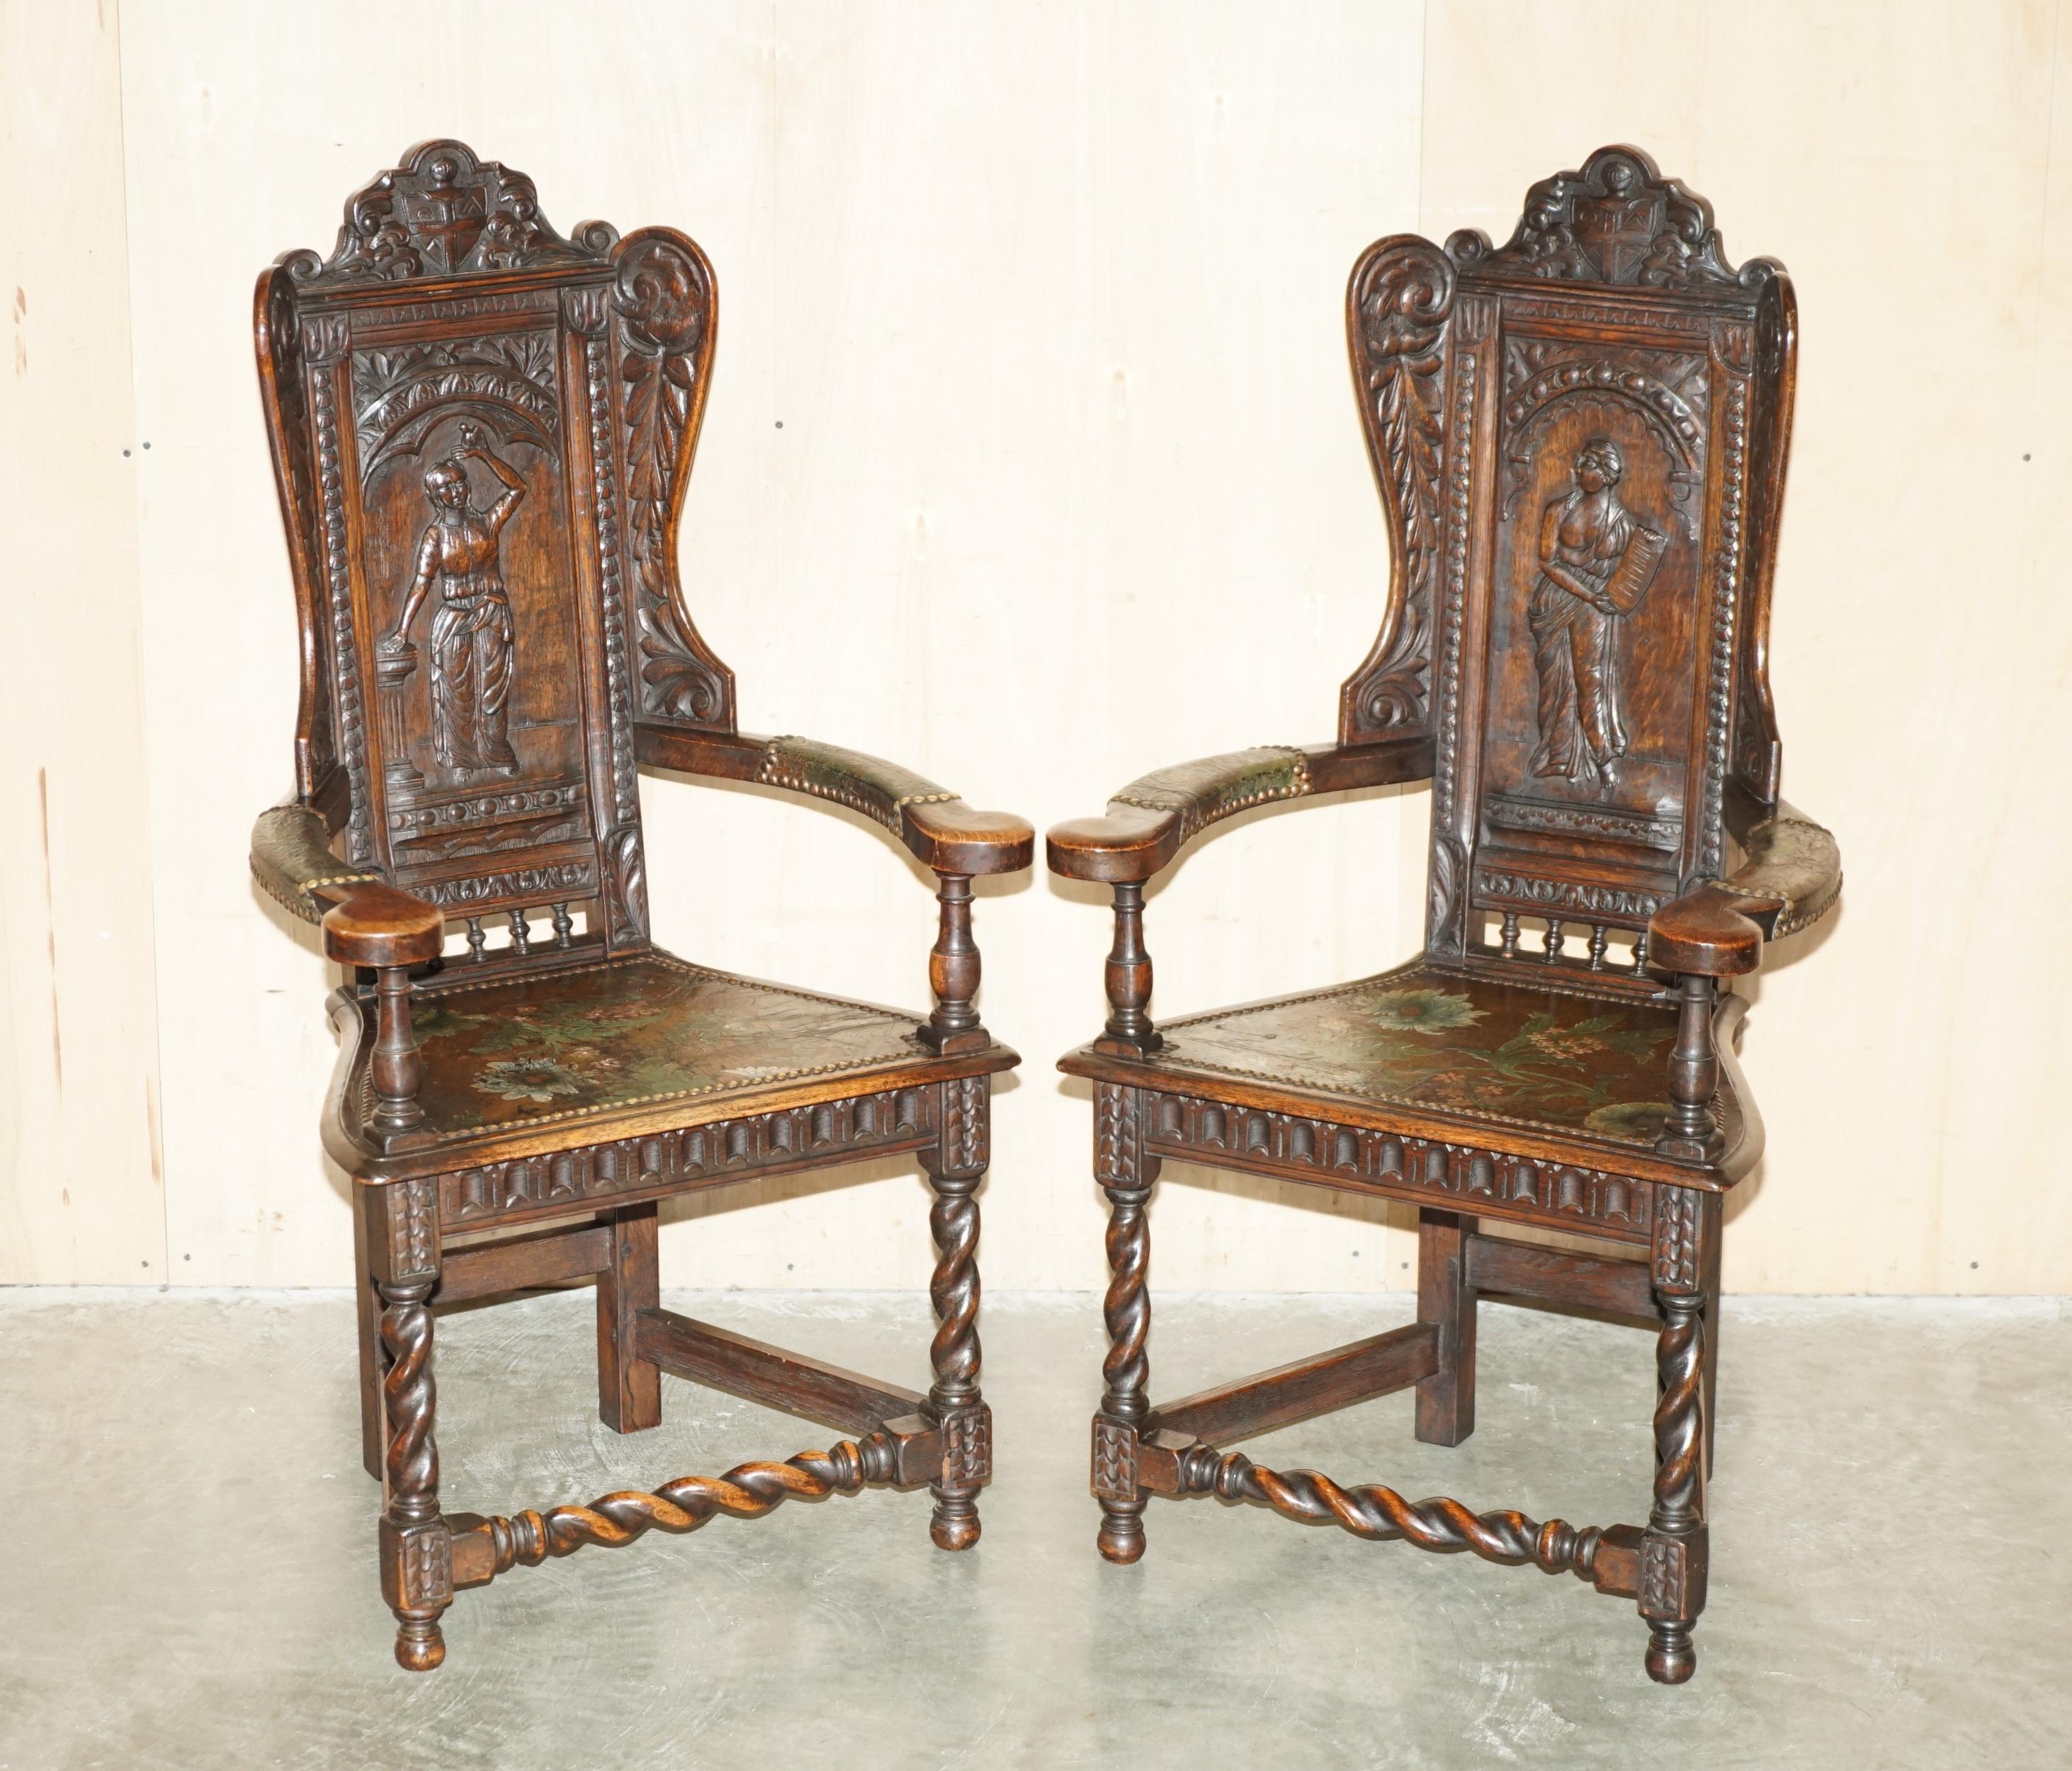 Royal House Antiques

Royal House Antiques freut sich, diese äußerst seltene Suite von vier völlig originalen französischen Caquetoire-Sesseln aus dem 17. Jahrhundert (ca. 1640-1680) mit kunstvoll geschnitzten Armlehnen und polychrom bemalten Sitz-